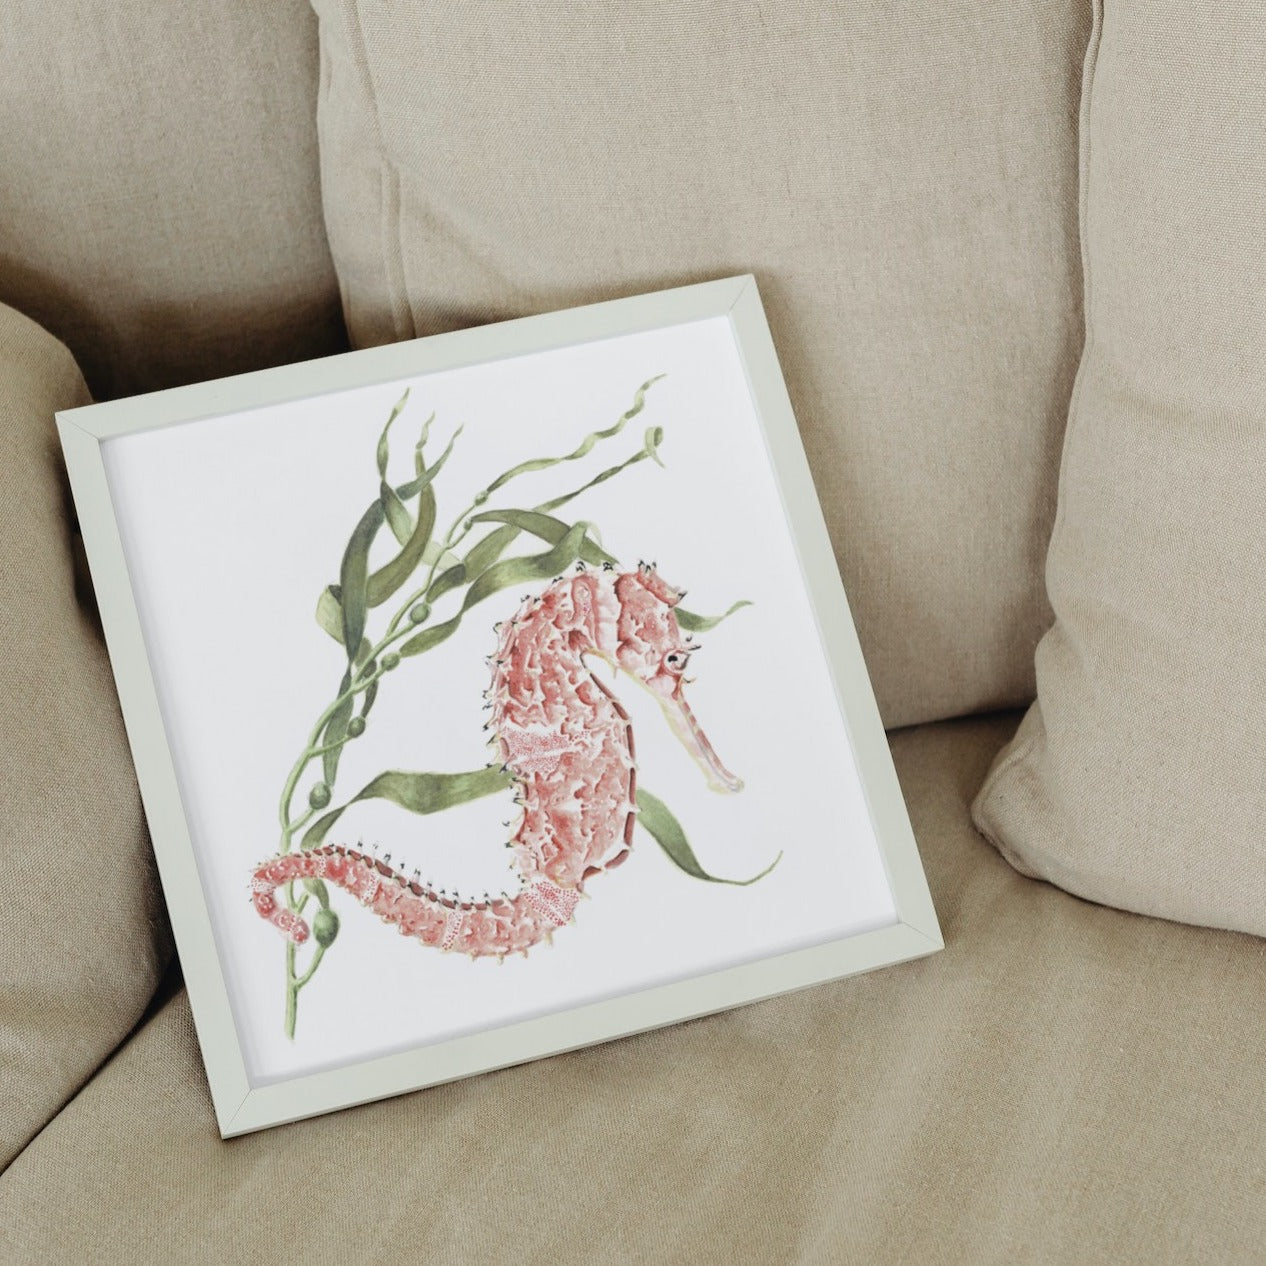 Seahorse and Seaweed Art Print - Silas